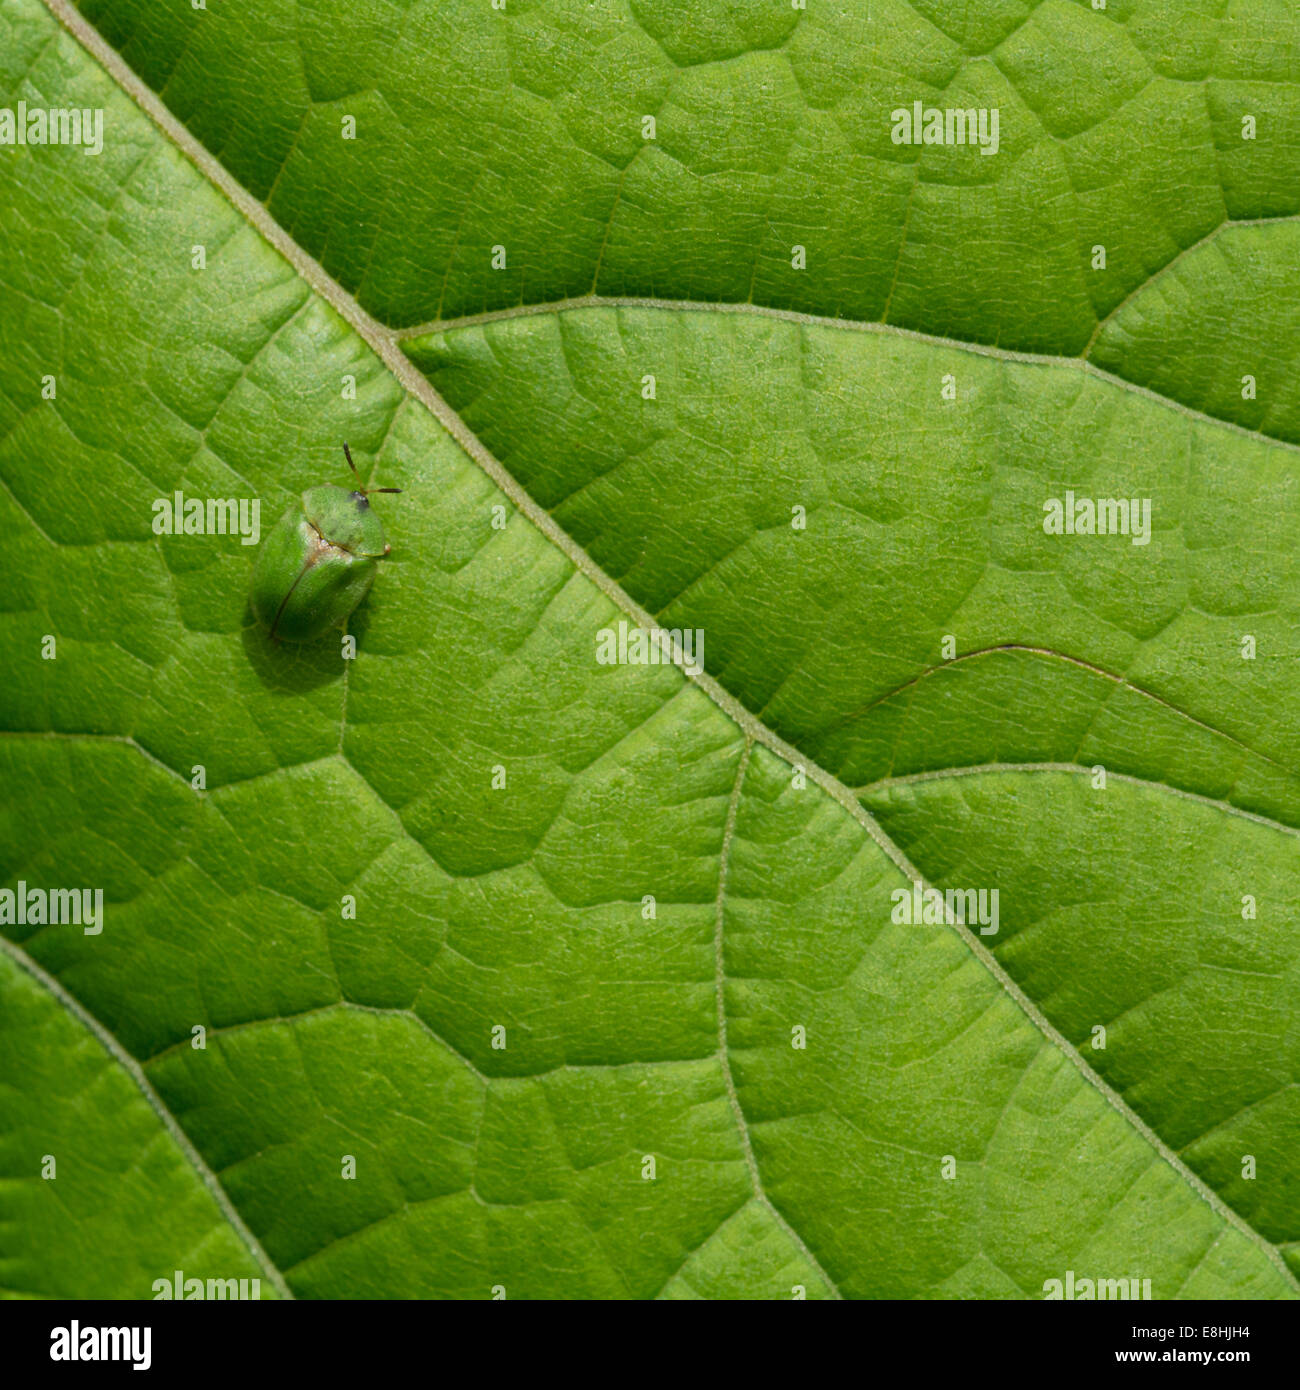 Thistle Tortoise Beetle on a leaf. Stock Photo